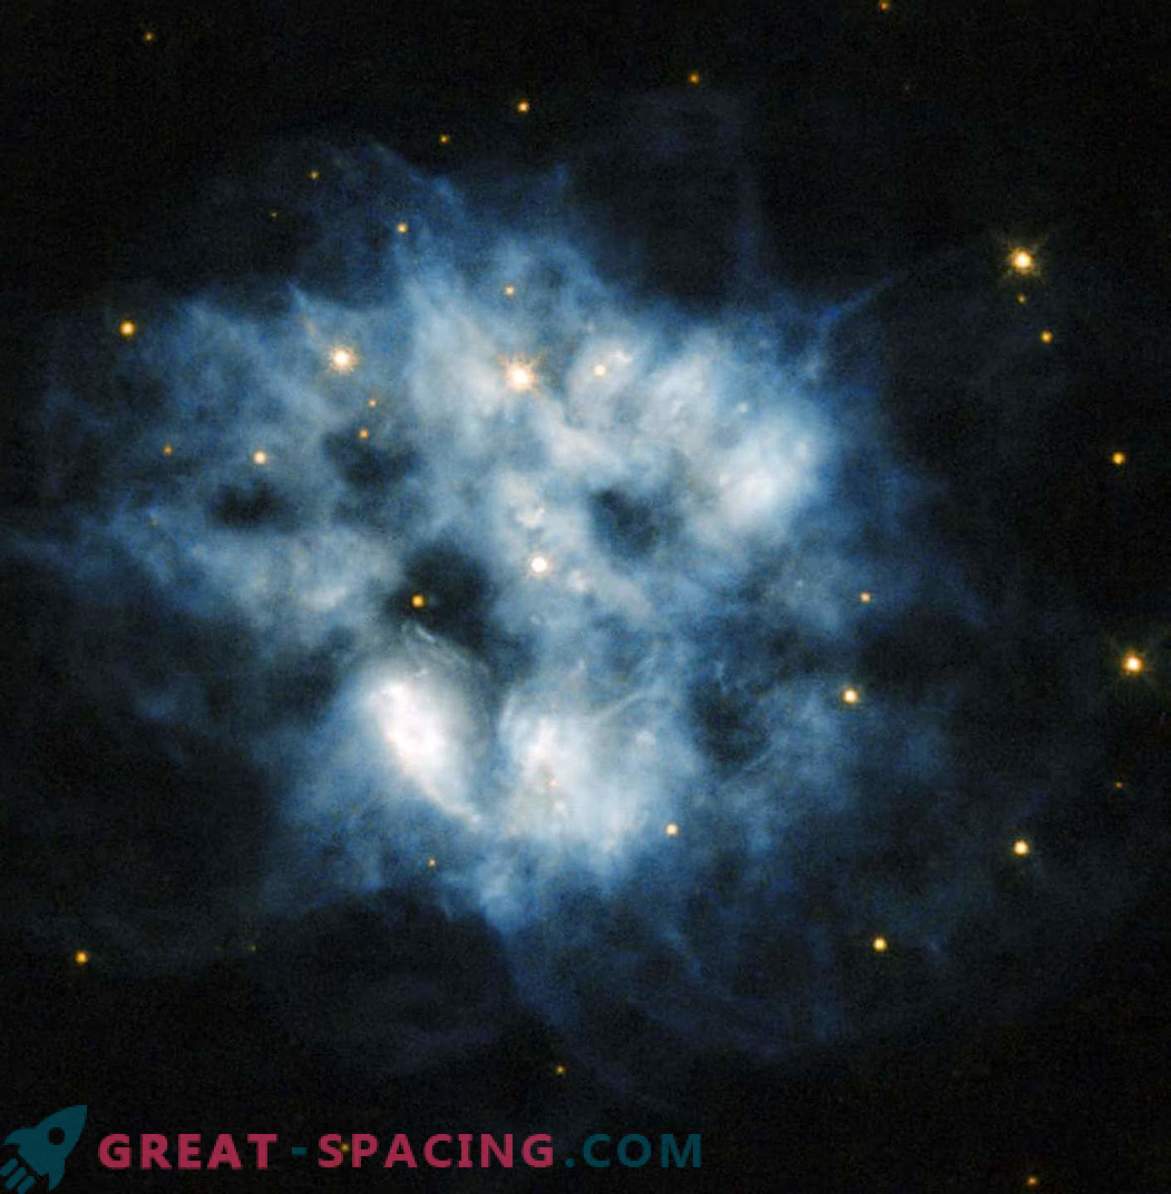 Resti di supernova con potente radiazione termica